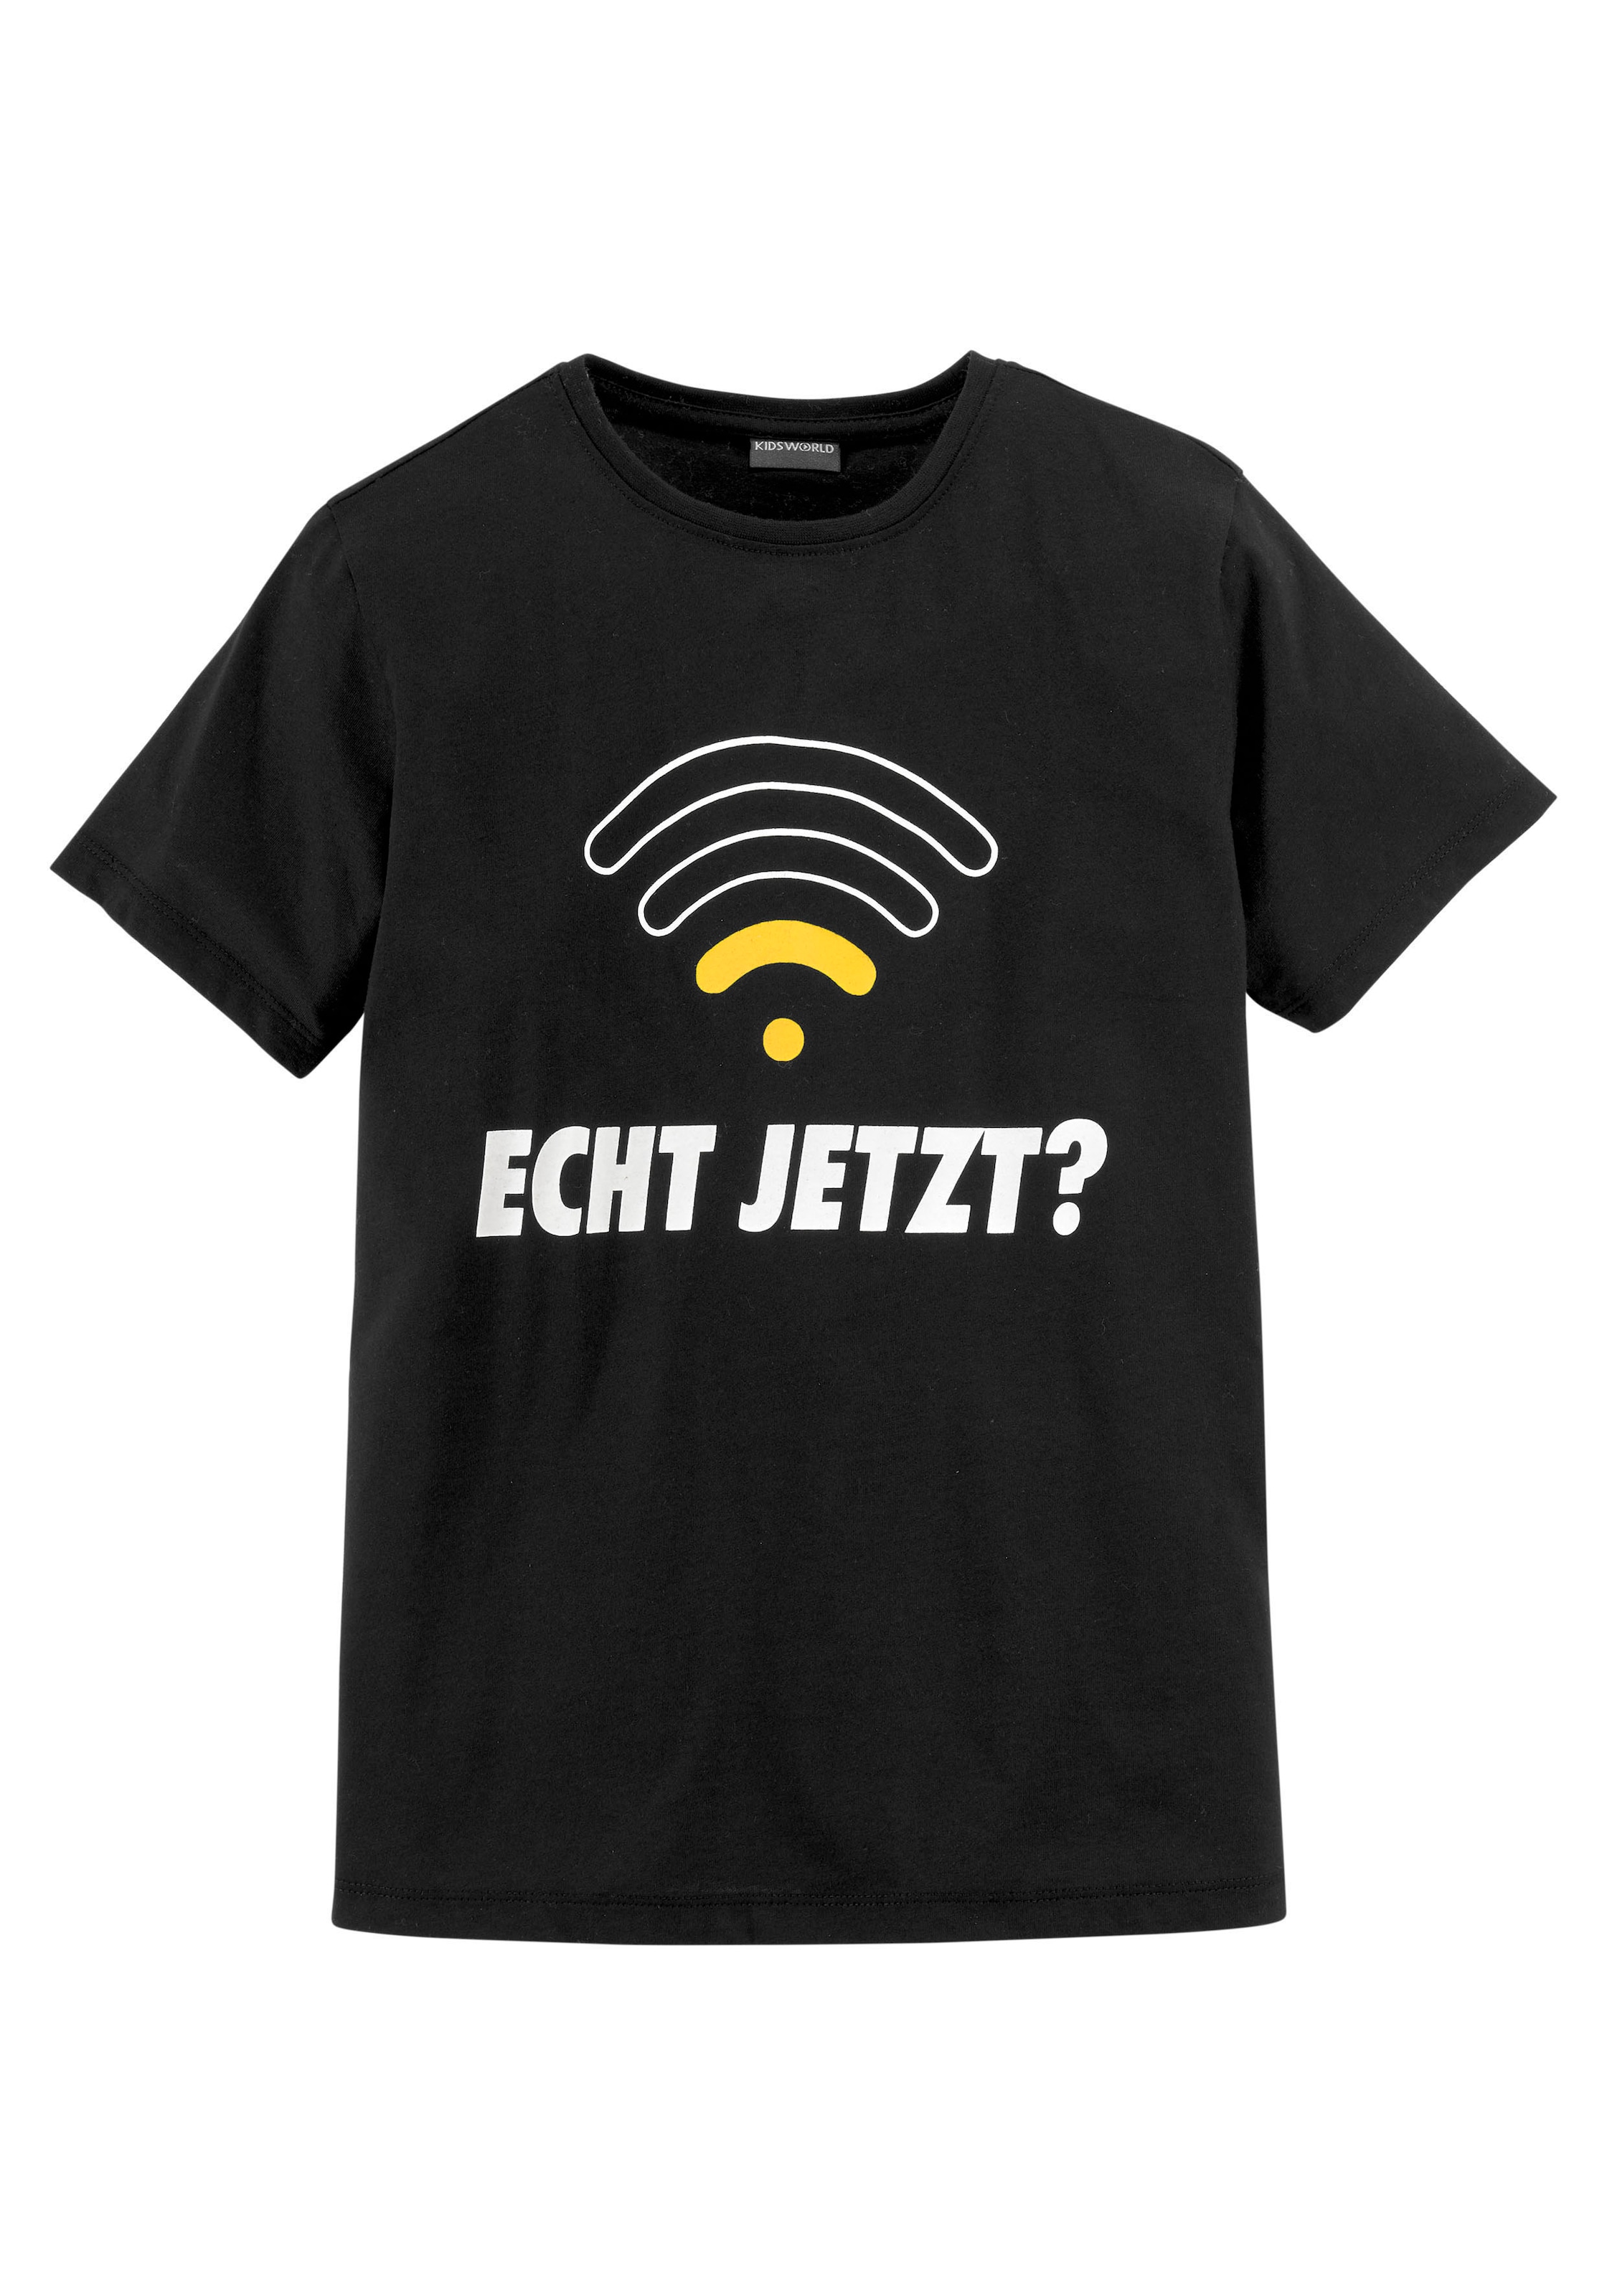 KIDSWORLD bei JETZT?«, »ECHT T-Shirt Spruch